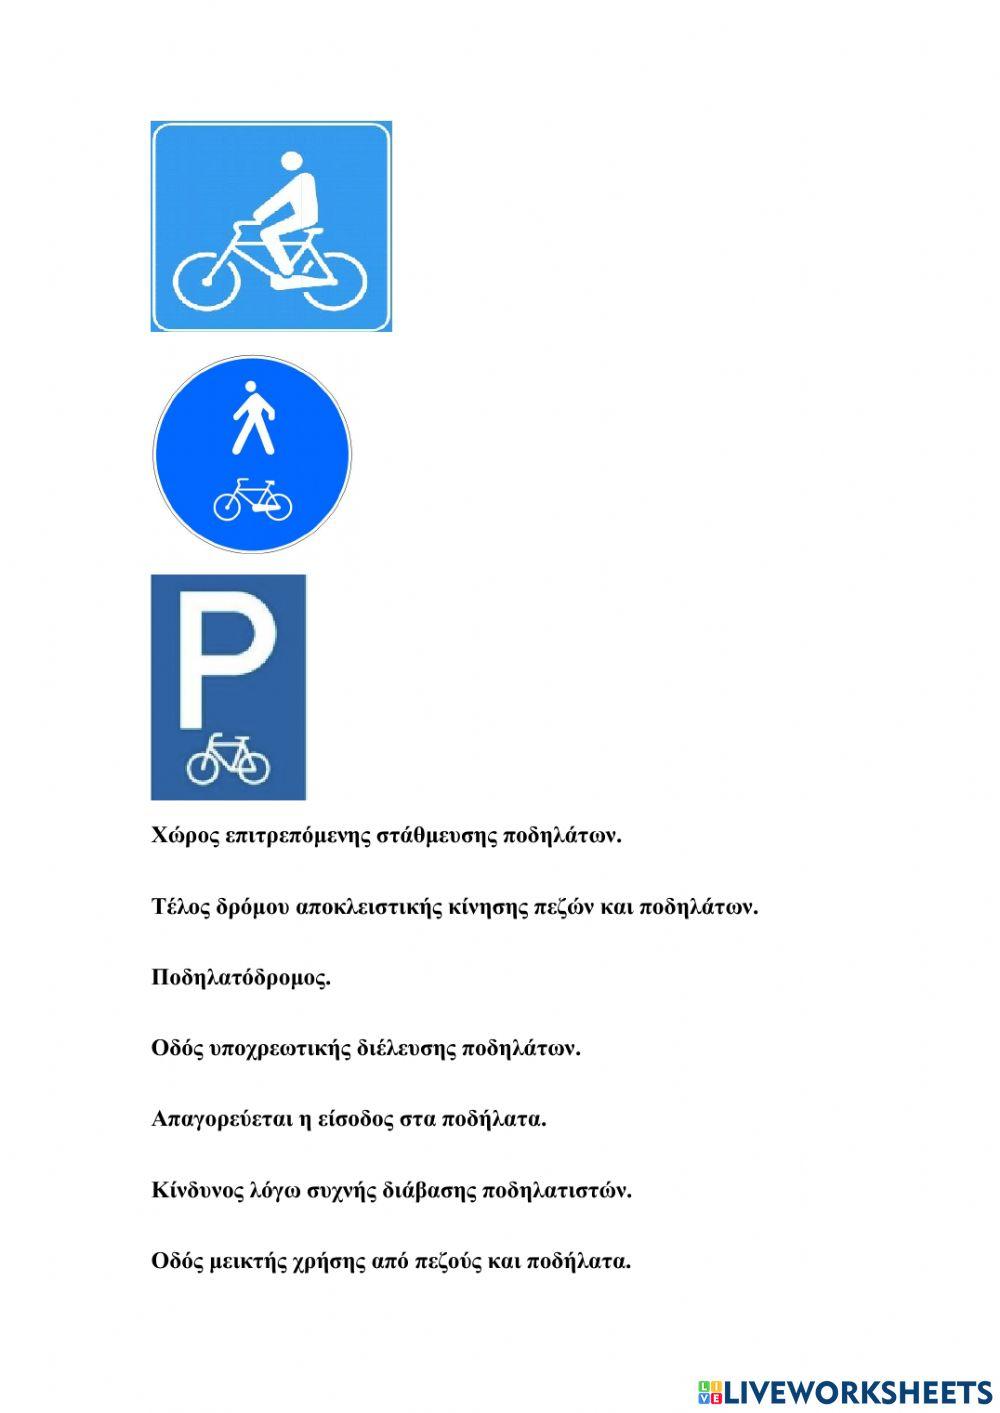 Χρήσιμα σήματα για ποδηλάτες